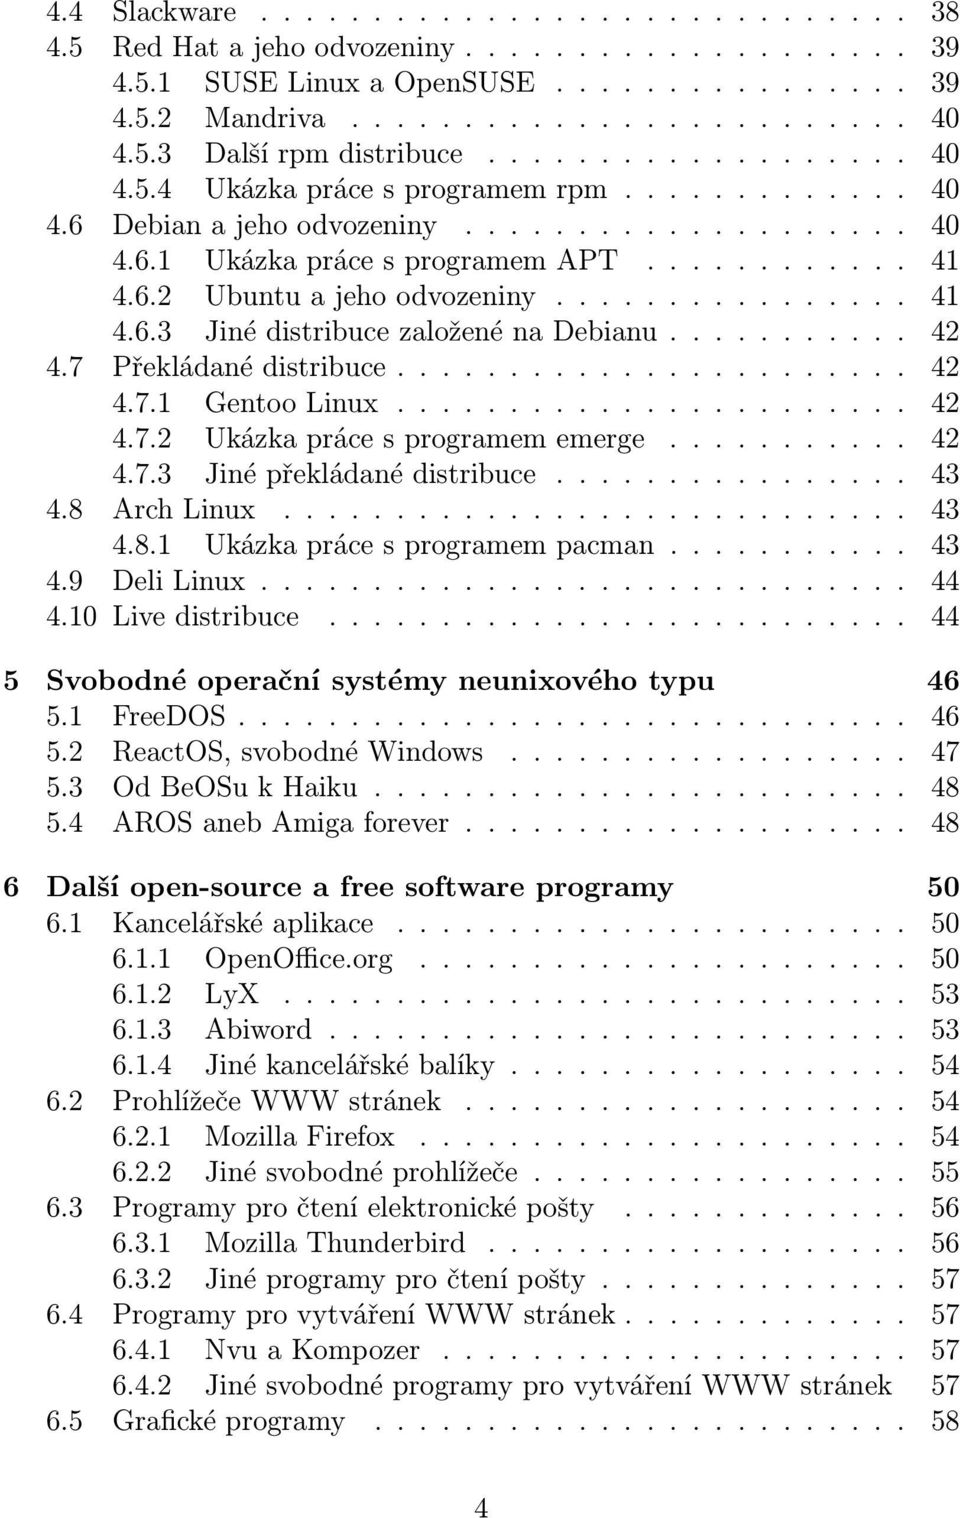 ... 42 4.7.3 Jinépřekládanédistribuce... 43 4.8 ArchLinux.... 43 4.8.1 Ukázkaprácesprogramempacman.... 43 4.9 DeliLinux... 44 4.10 Livedistribuce.... 44 5 Svobodné operační systémy neunixového typu 46 5.